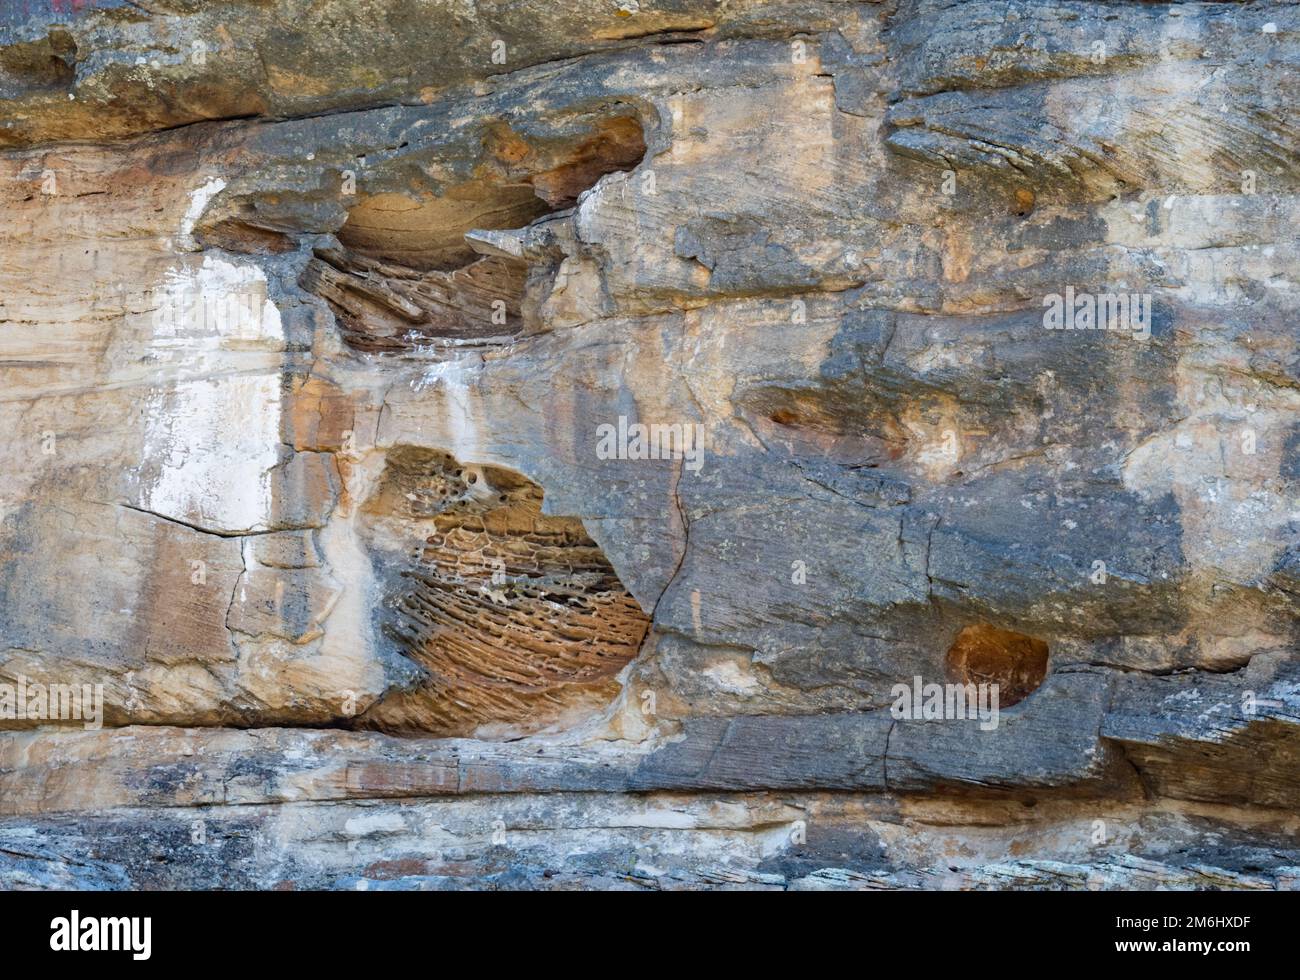 Querbeete aus Sandstein erodiert, um 3-Dimensionsgeometrie anzuzeigen. Westkap, Südafrika. Stockfoto